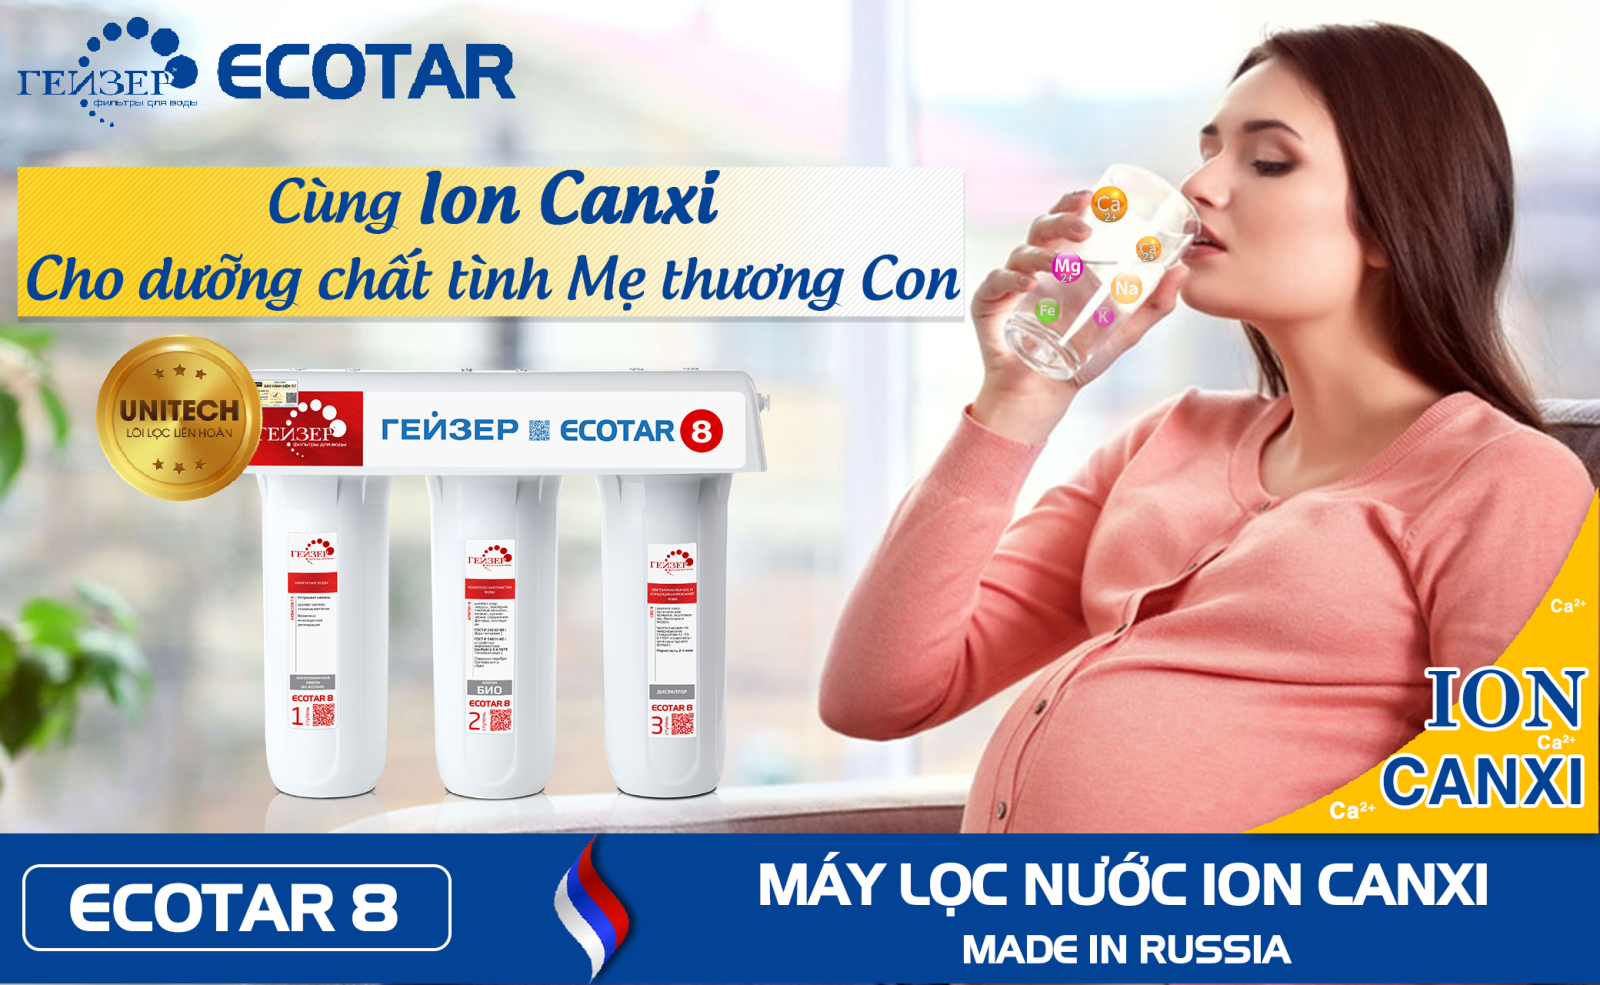 Ion Canxi trong Geyser Ecotar 8 tốt cho sức khoẻ bà bầu và em bé